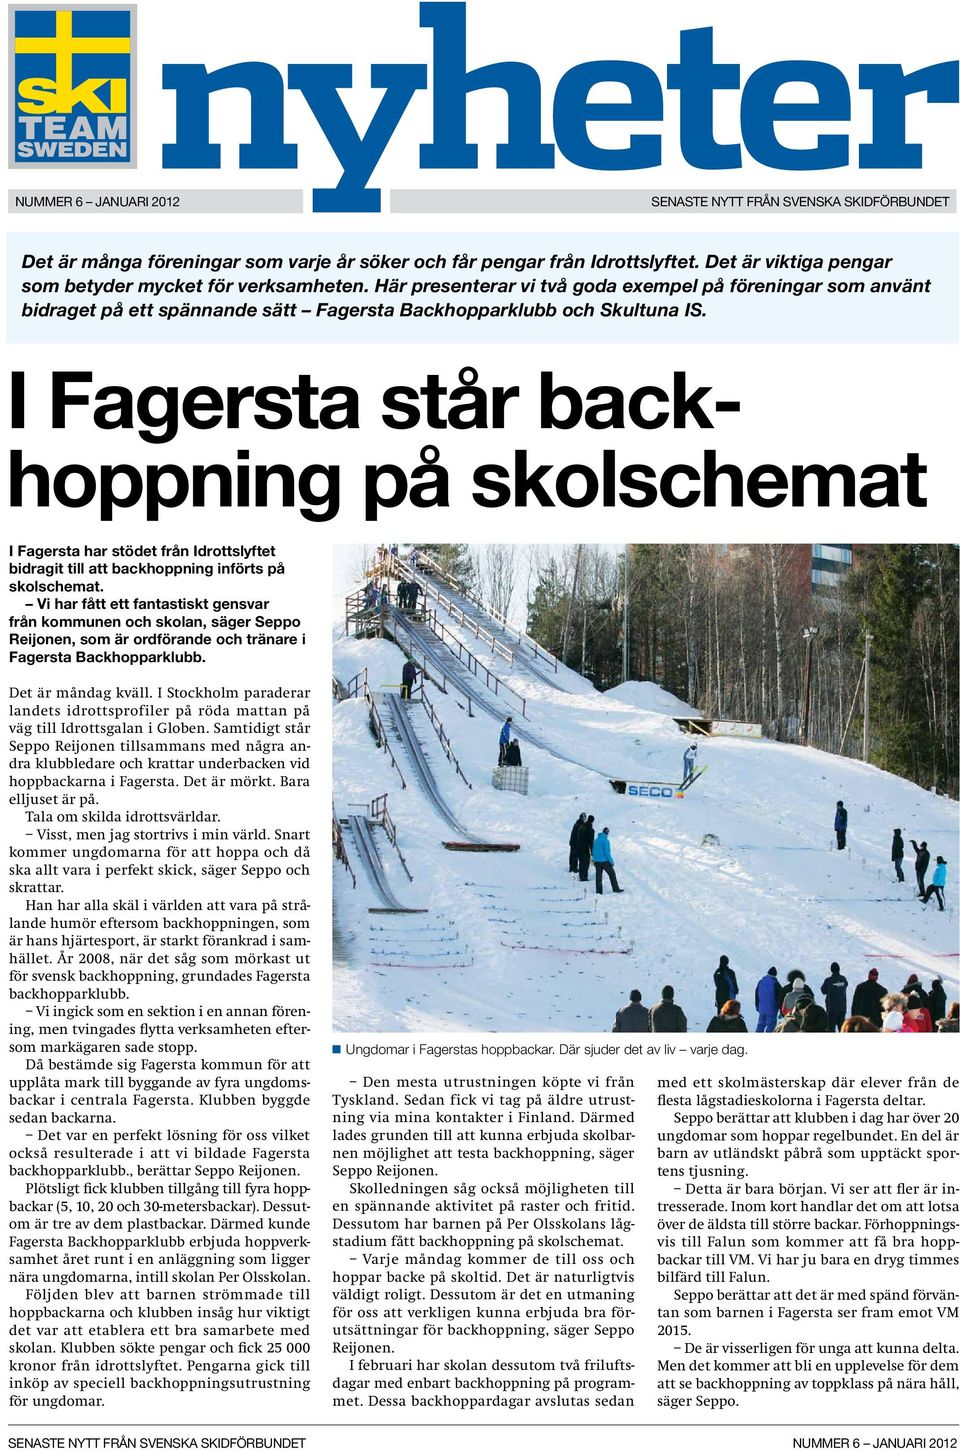 I Fagersta står backhoppning på skolschemat I Fagersta har stödet från Idrottslyftet bidragit till att backhoppning införts på skolschemat.